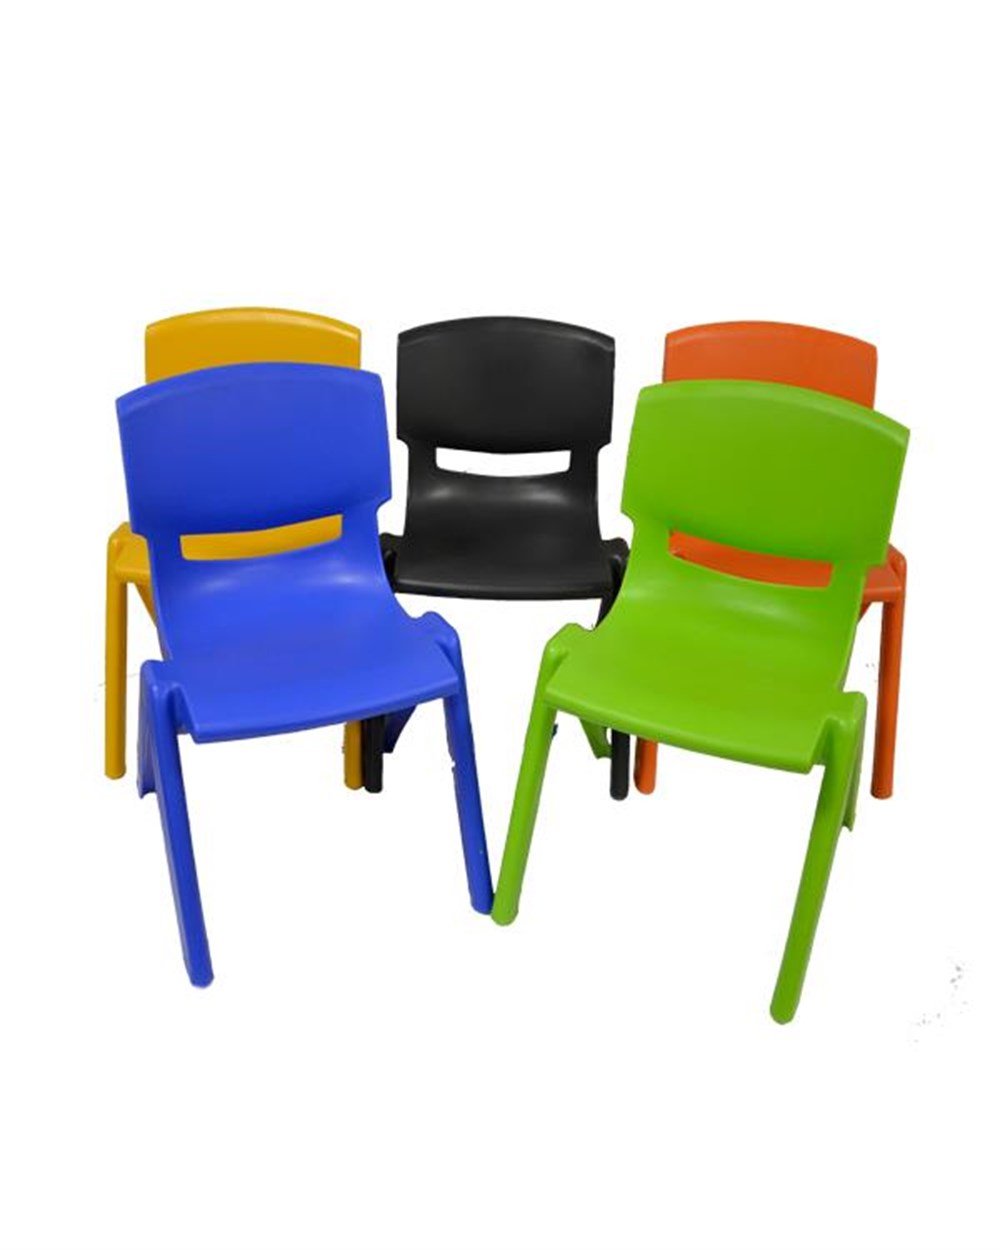 Junior Çocuk Sandalyesi, Kreş ve Anaokulu Sandalyesi Yeşil - temelcomtr